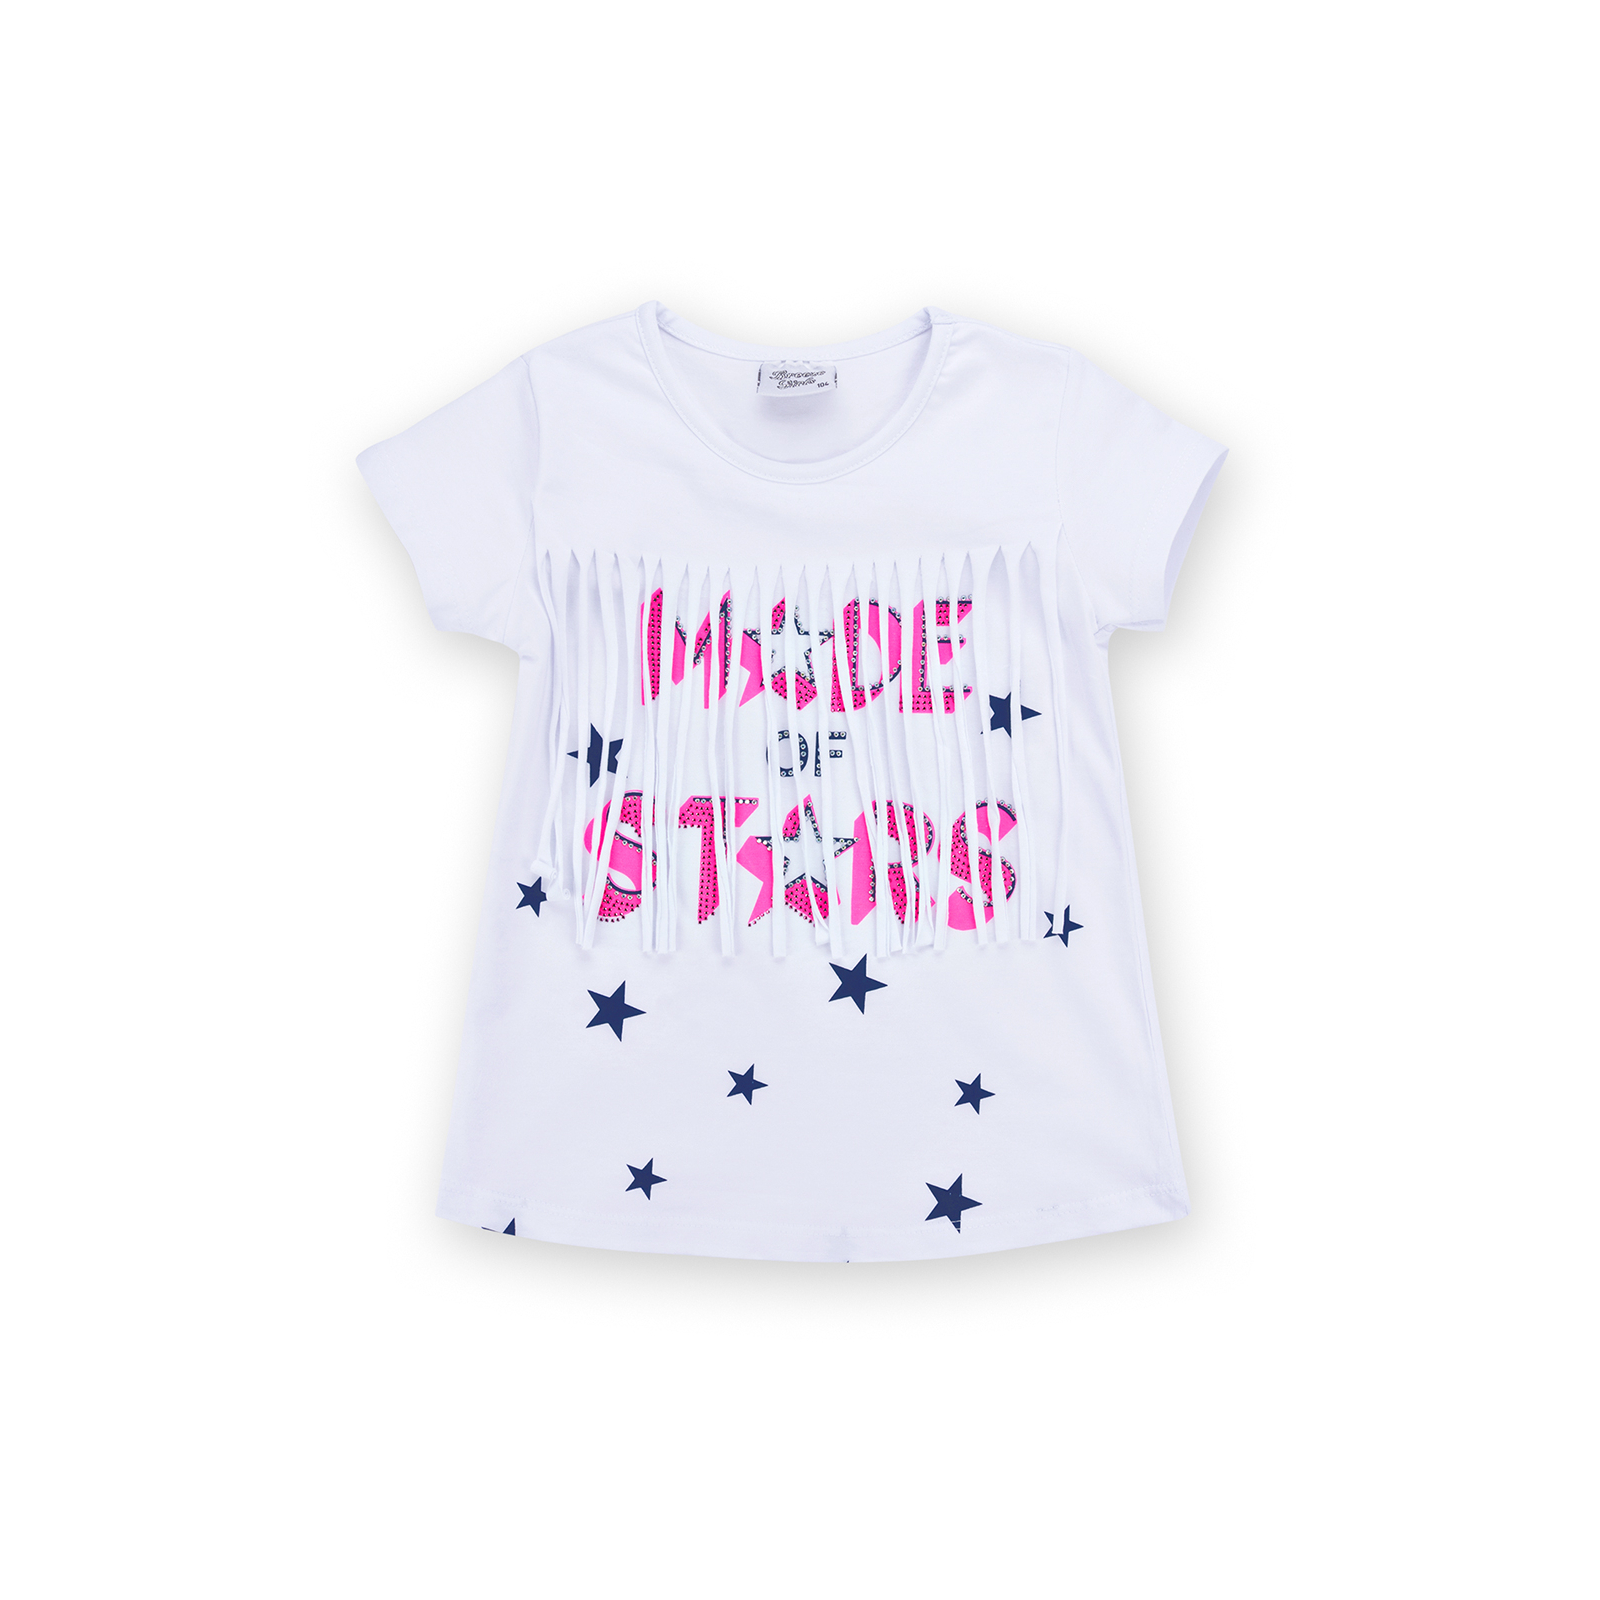 Набор детской одежды Breeze футболка со звездочками с шортами (9036-104G-white) изображение 2